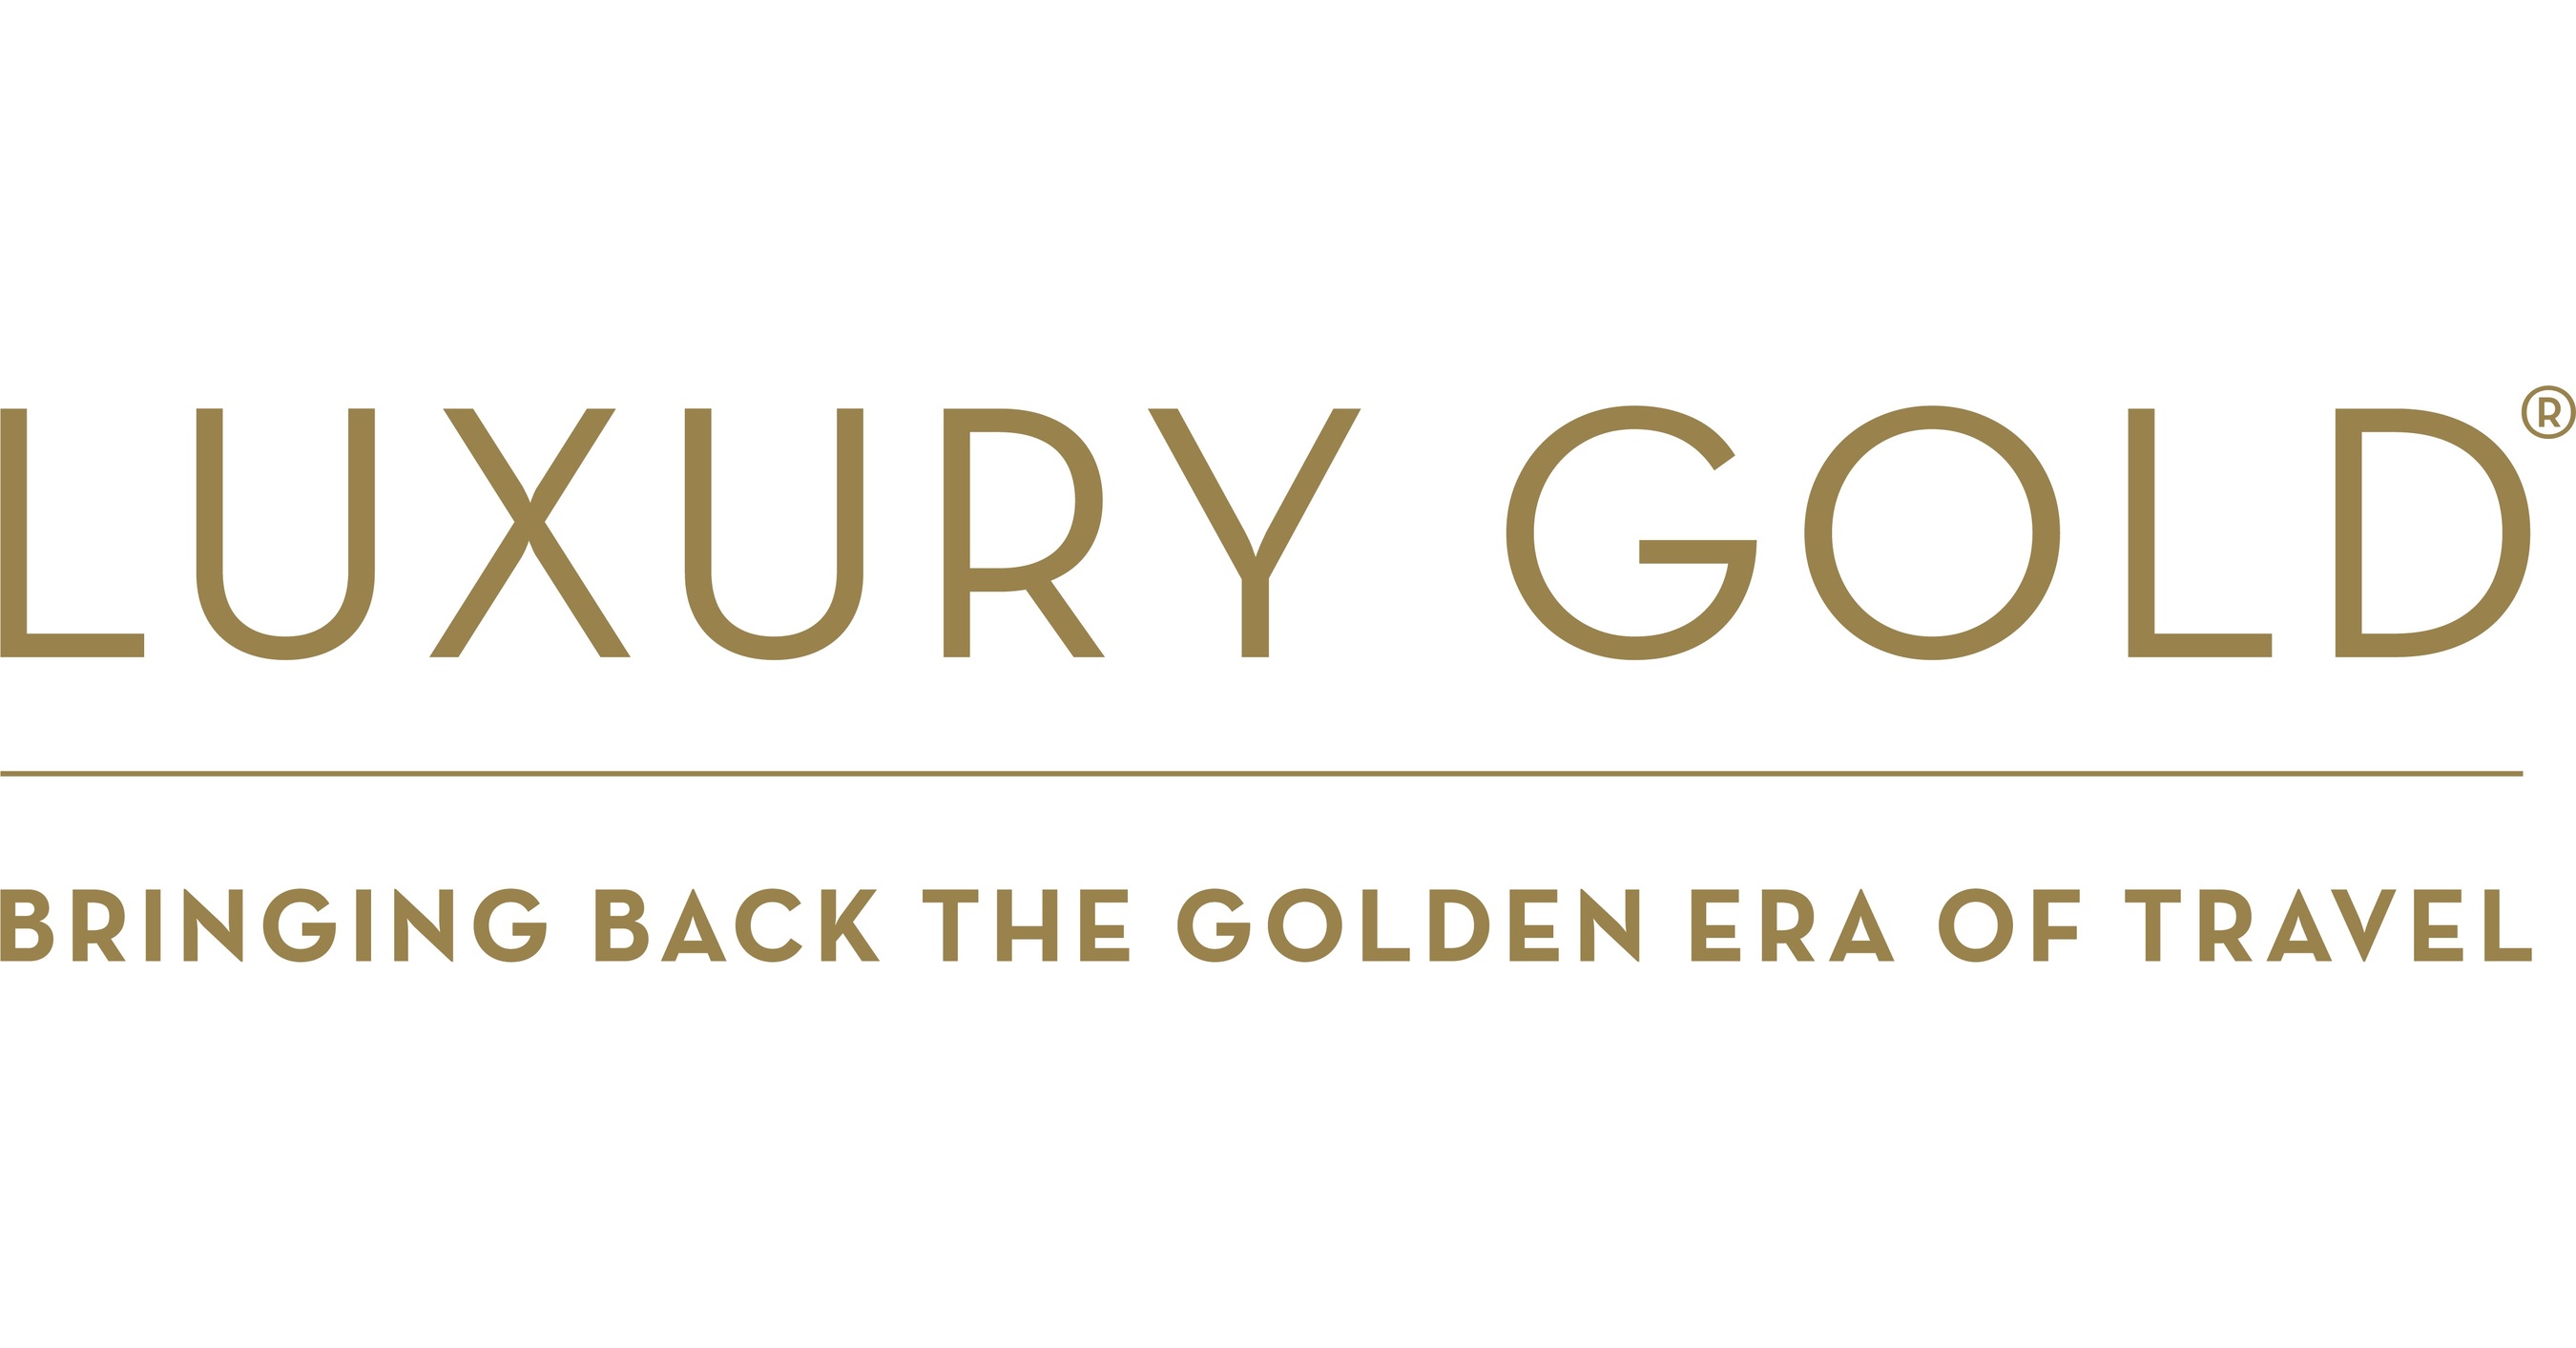 luxury gold travel costco